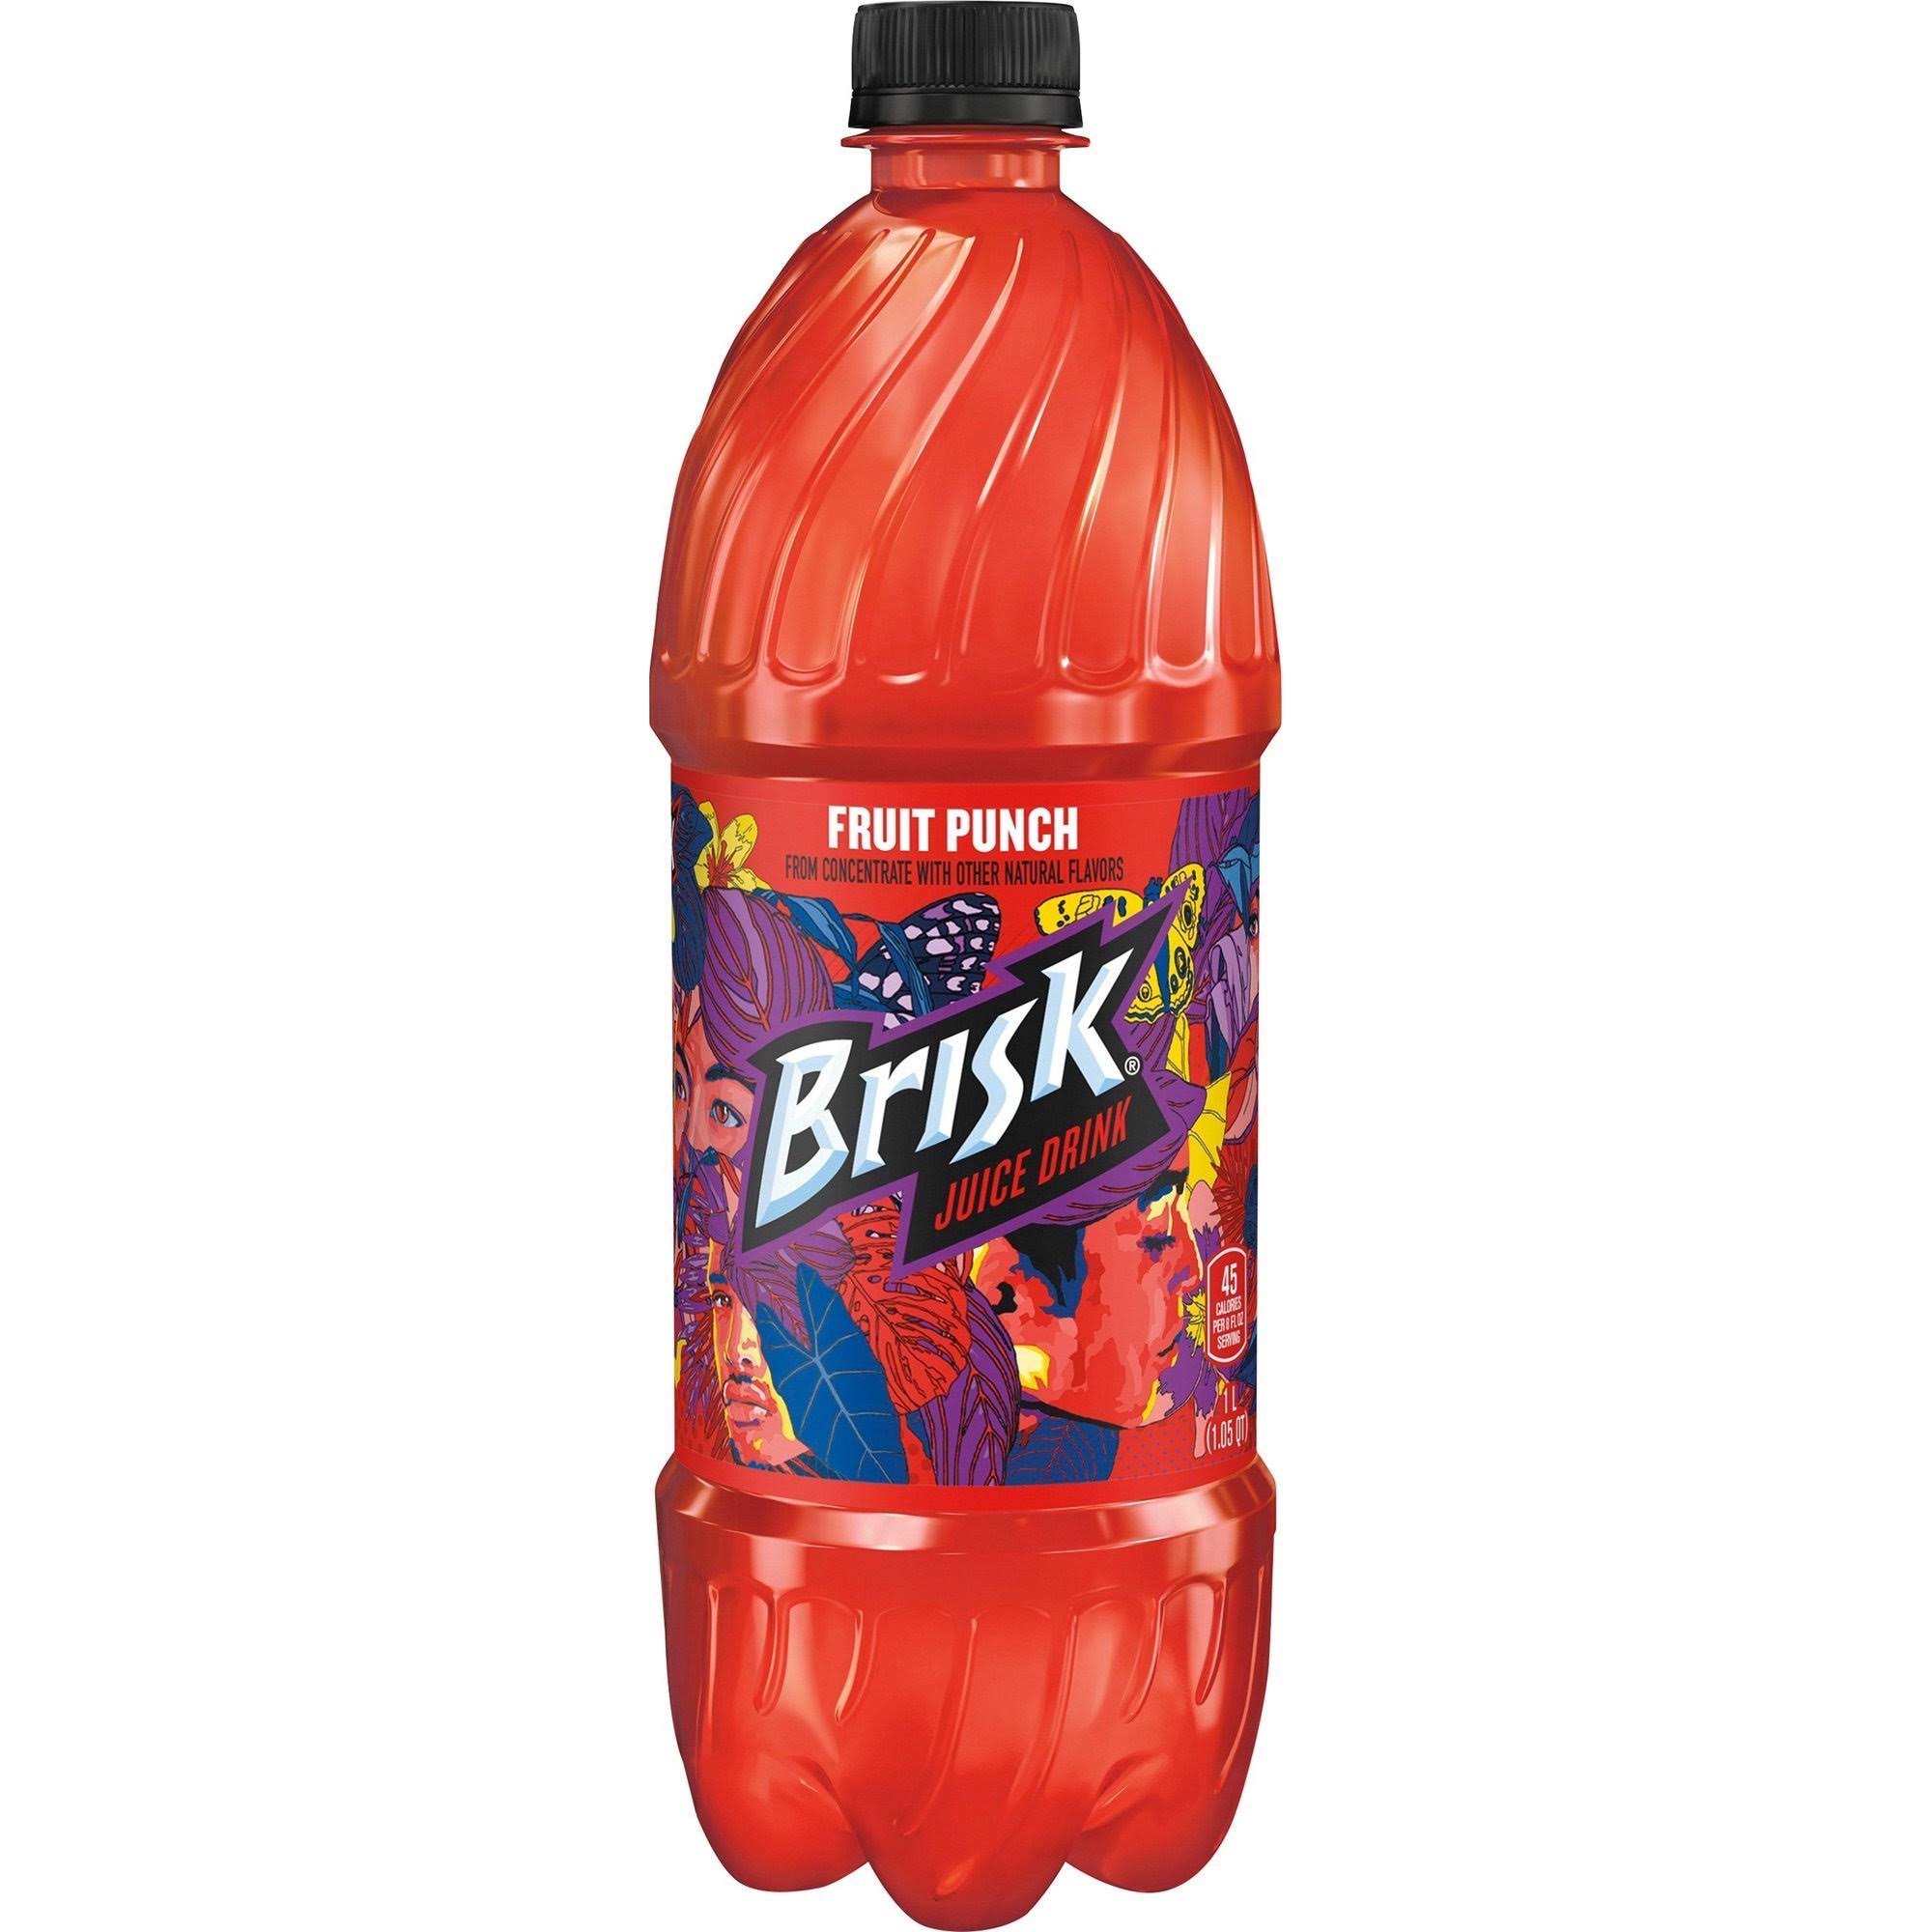 Brisk Fruit Punch Juice Drink